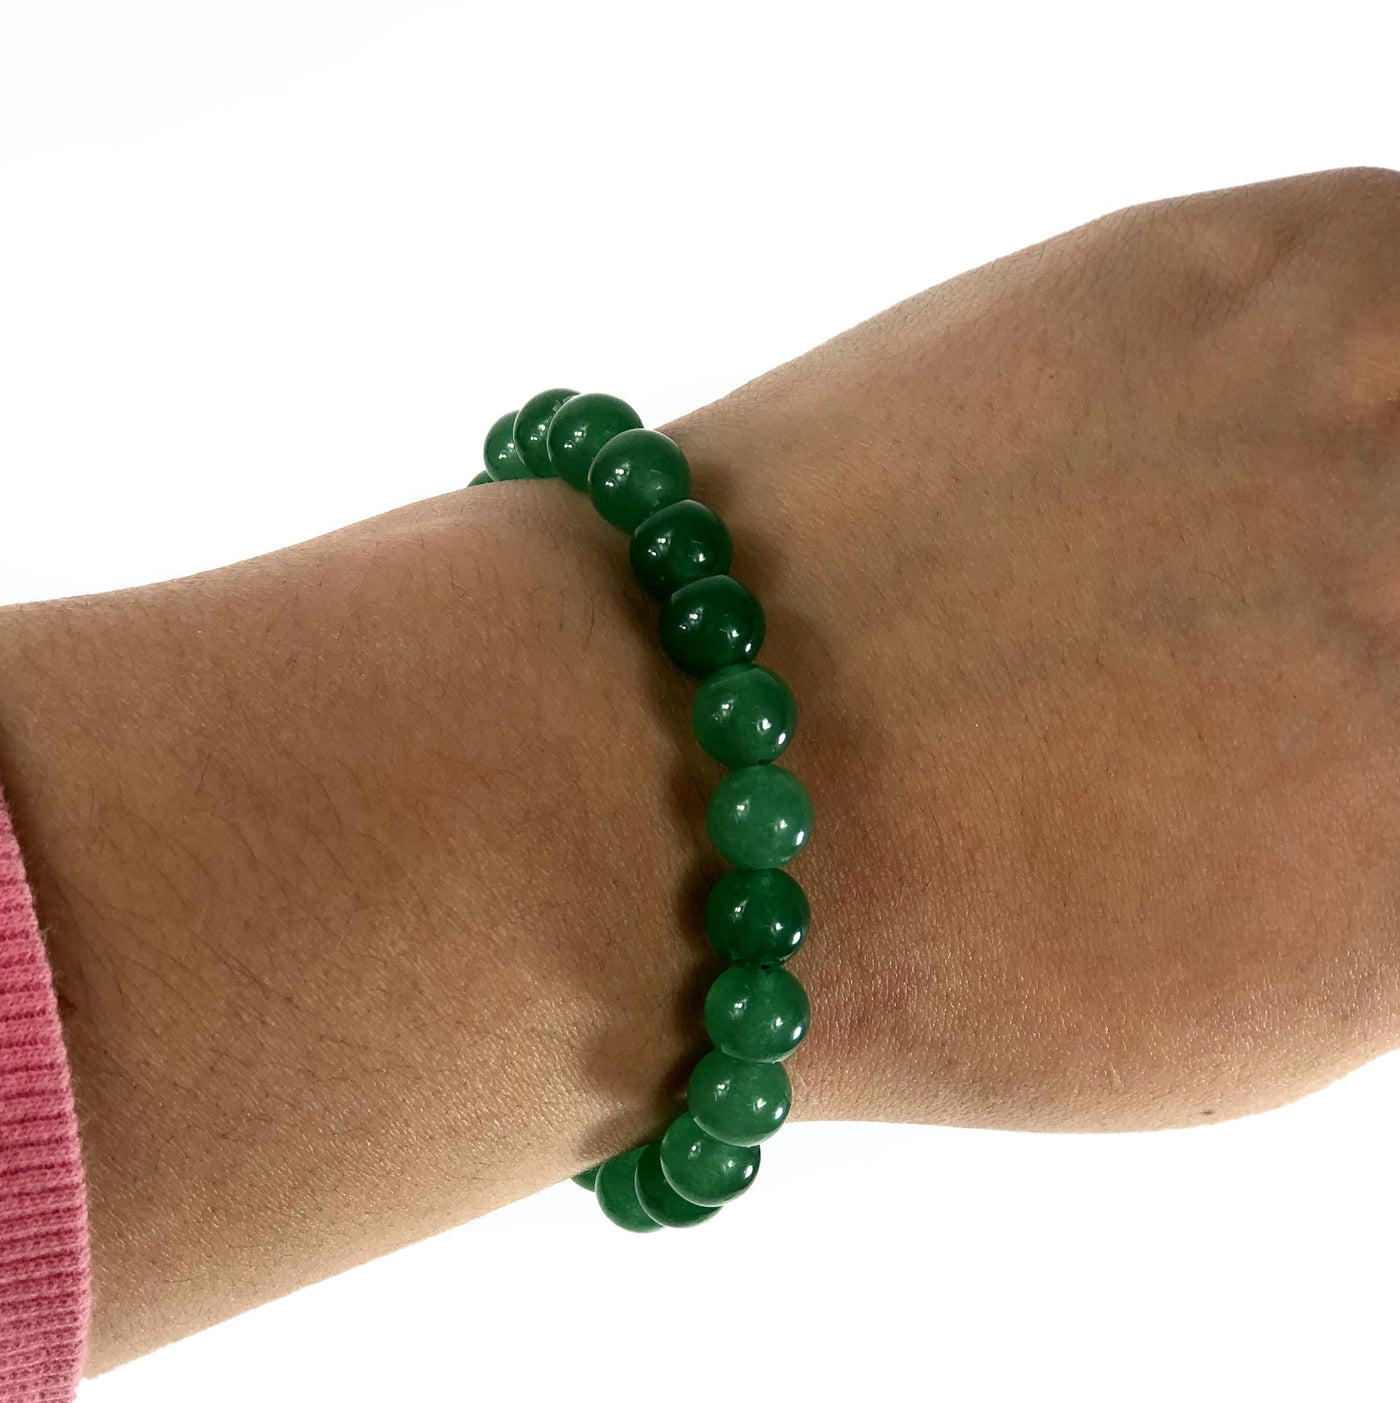 green aventurine healing stone bracelet being worn with white background